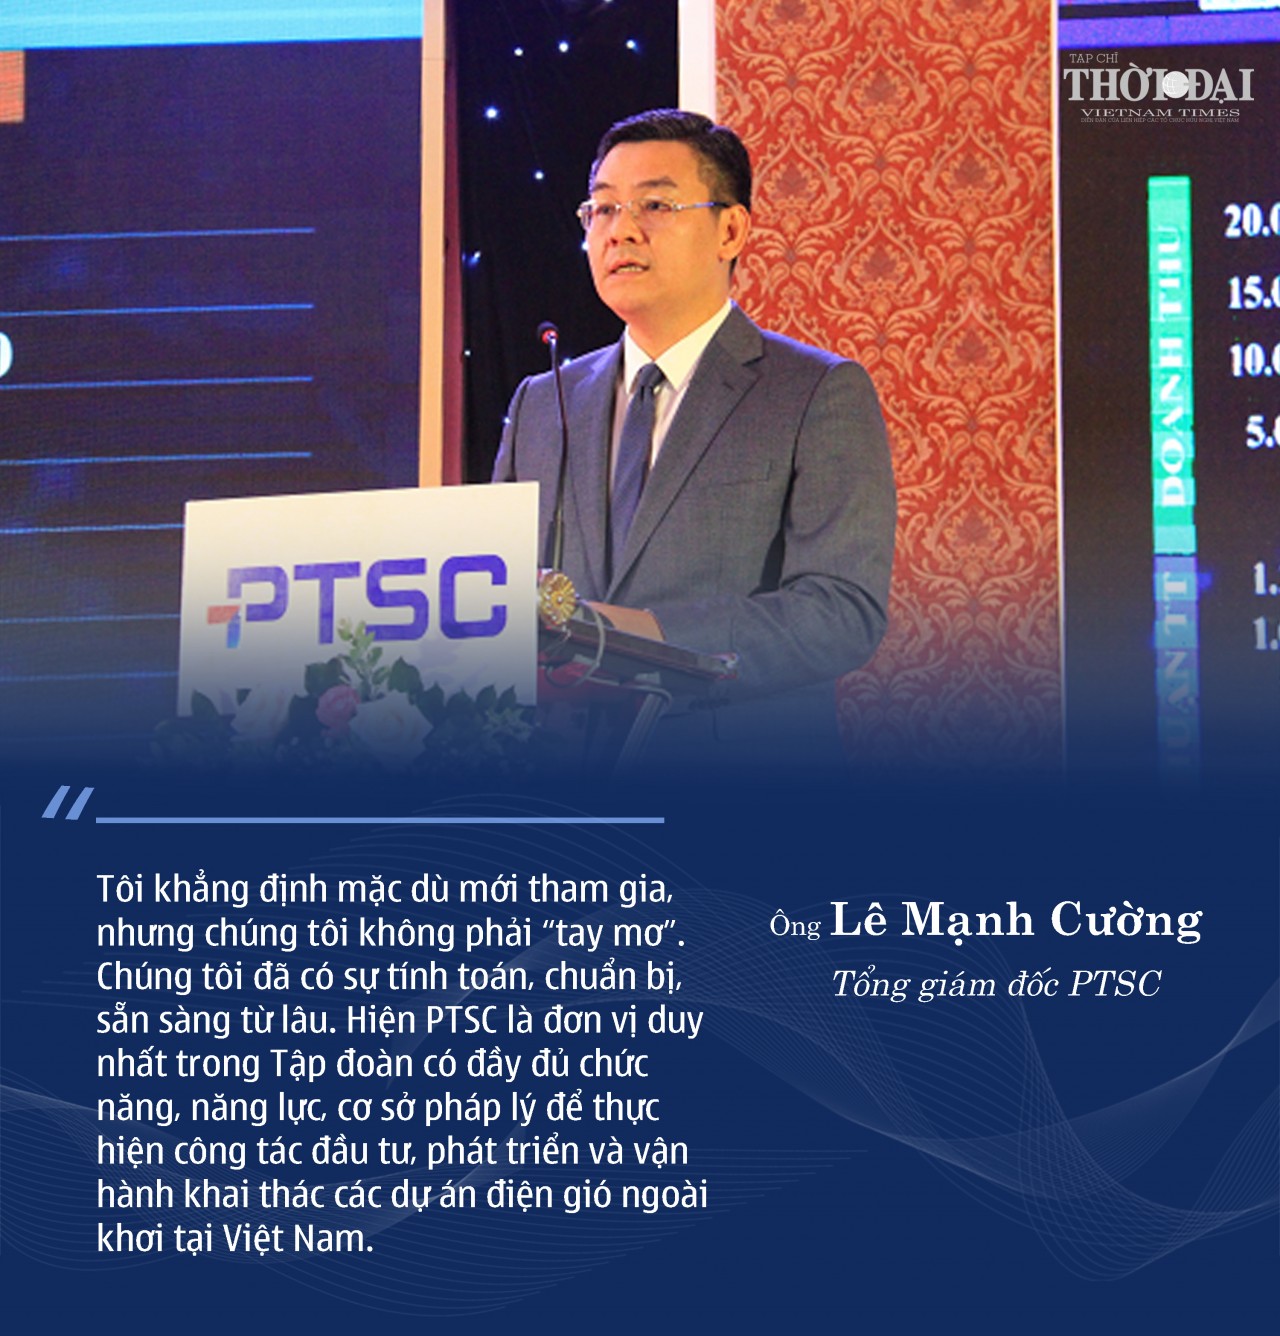 Tổng giám đốc PTSC Lê Mạnh Cường: Luôn tìm kiếm giải pháp mới để giữ trọn niềm tin của khách hàng